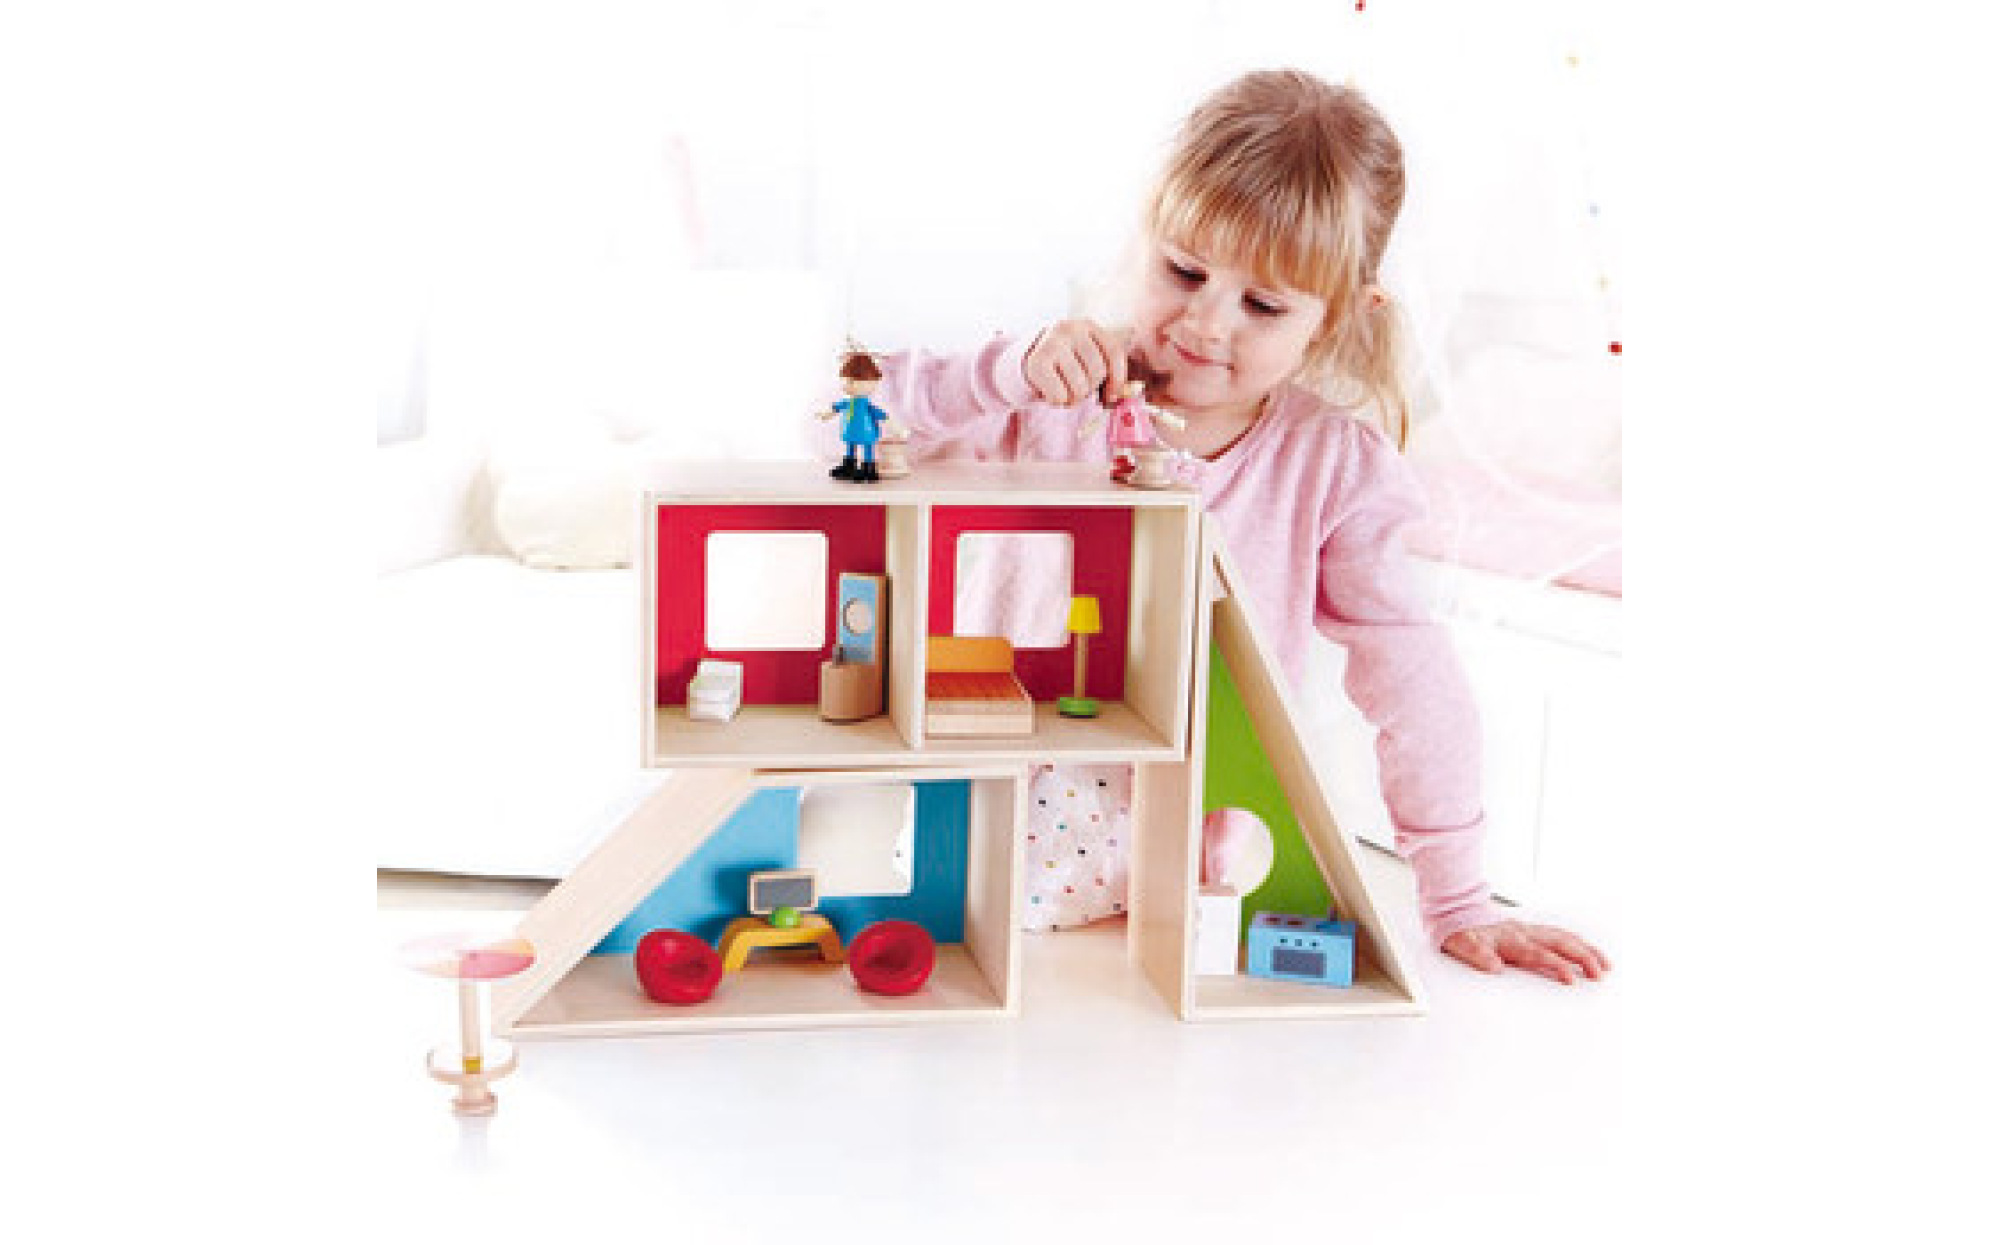 Premium Play Therapy Toys Starter Kit